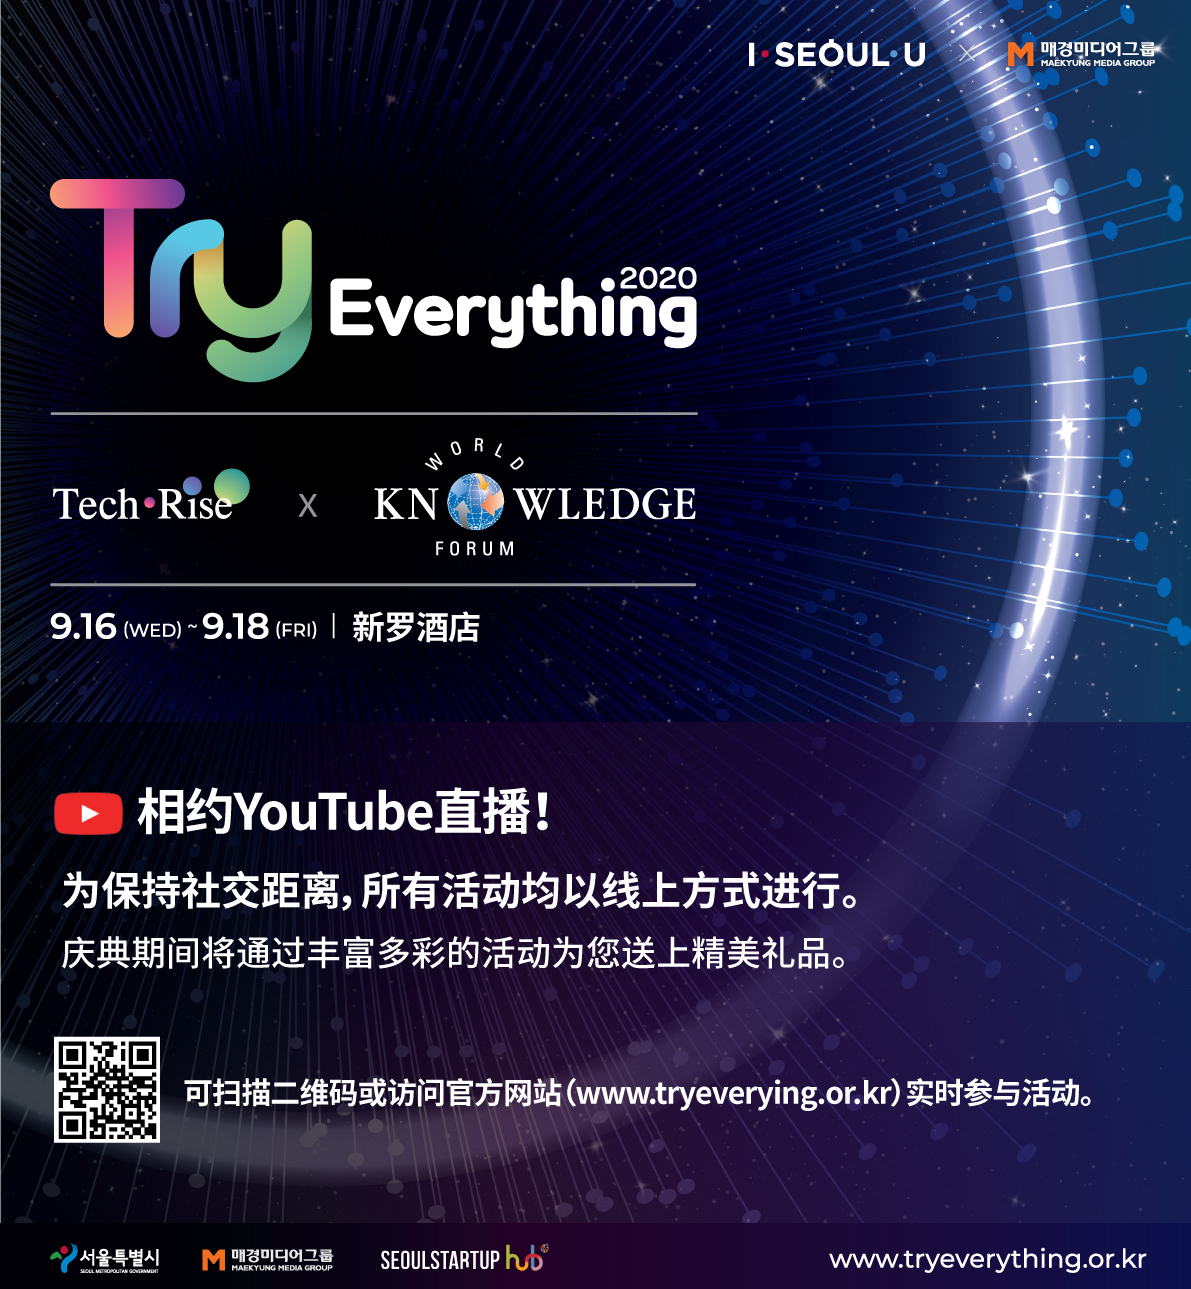 全球初创企业大庆典Try Everything 20202020年09月16日~2020年9月18日（为期三天）
以无现场观众、不见面方式进行www.tryeverything.or.kr